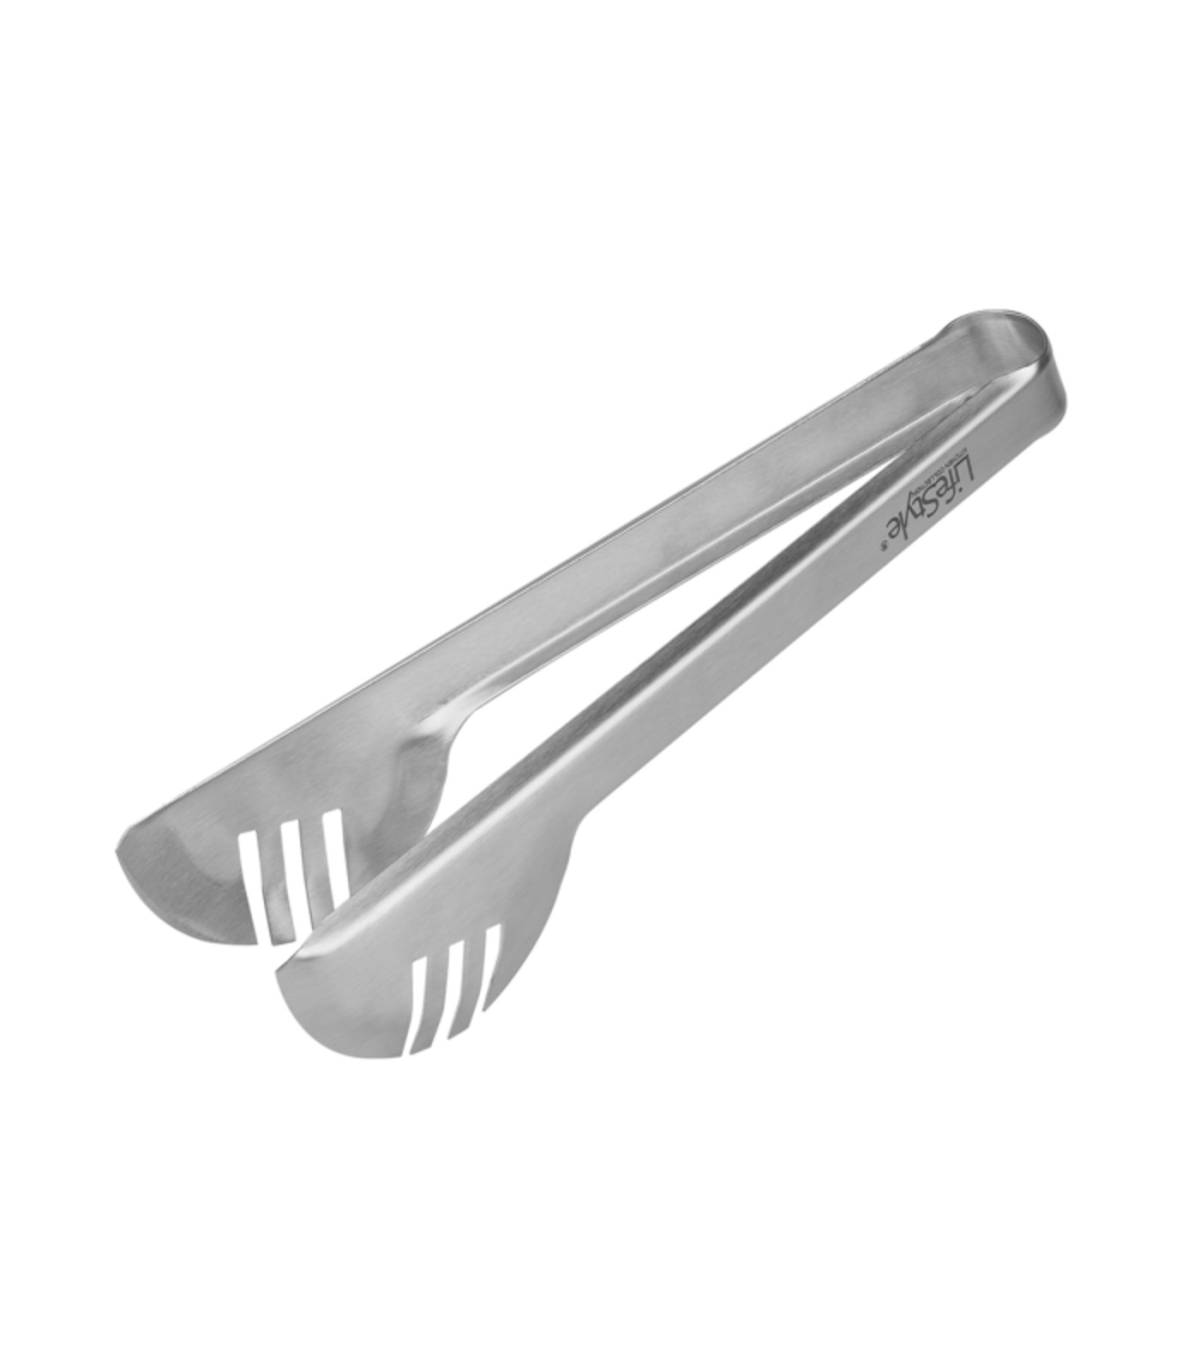 Tradineur - Pinzas para ensaladas o espaguetis de acero inoxidable, pinzas  de cocina, 24 x 5 x 7 cm